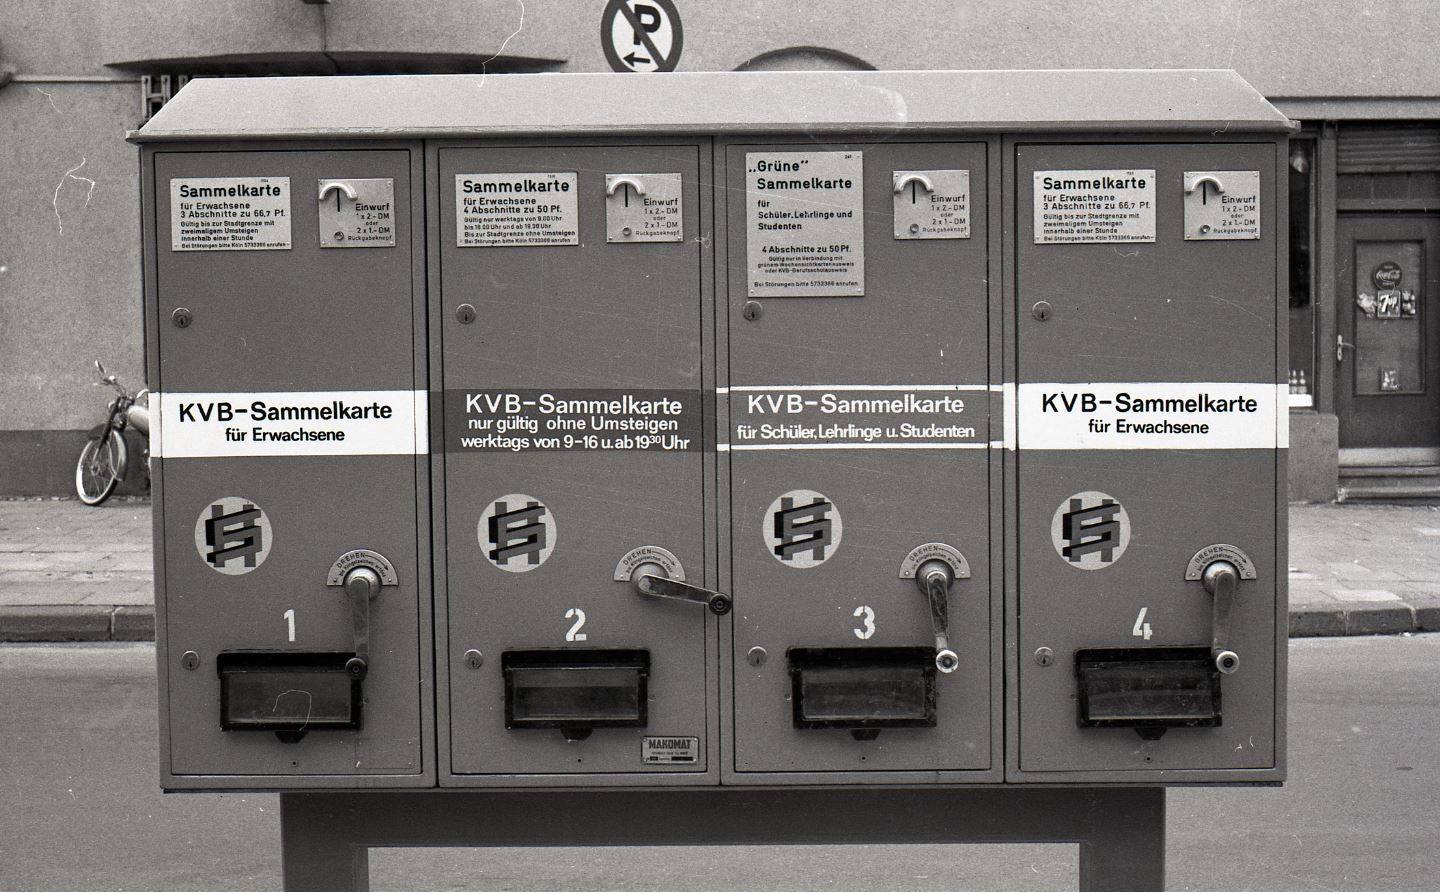 Ein Bild zeigt einen historischen Fahrkartenautomaten aus den 60er Jahren des vorherigen Jahrhunderts.